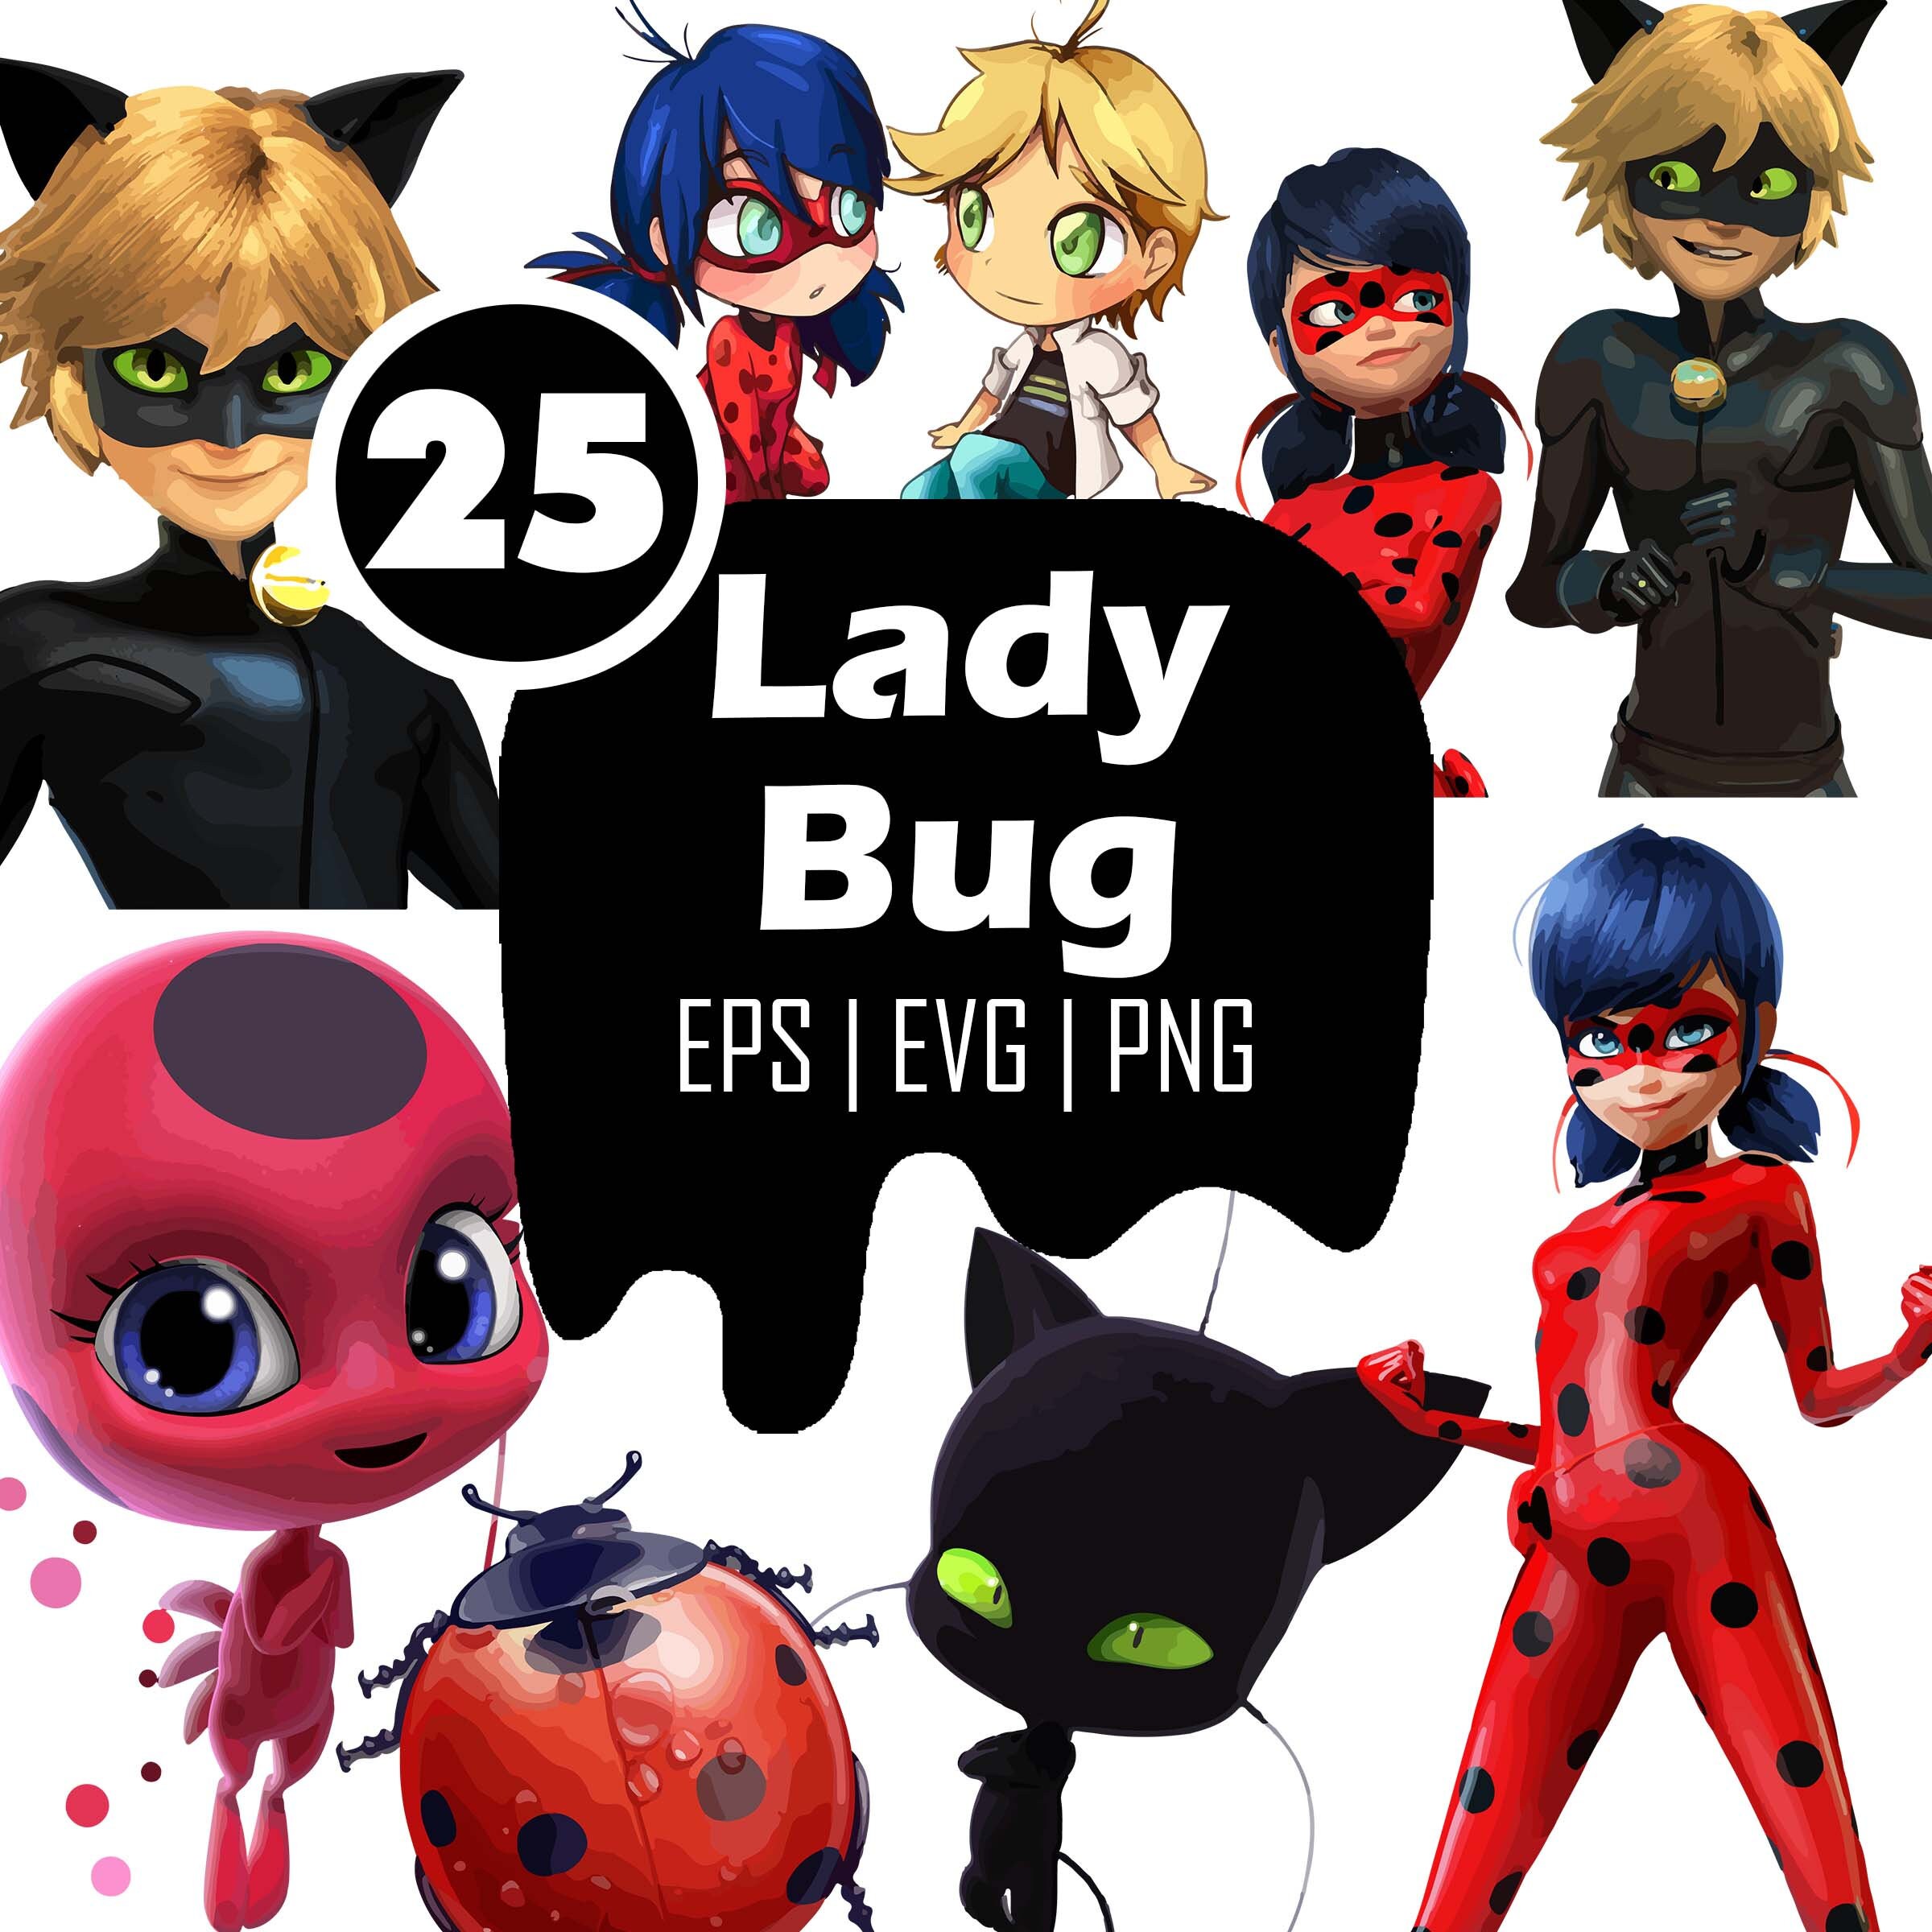 23 Miraculous Ladybug & Cat Noir Images, Stock Photos, 3D objects, &  Vectors